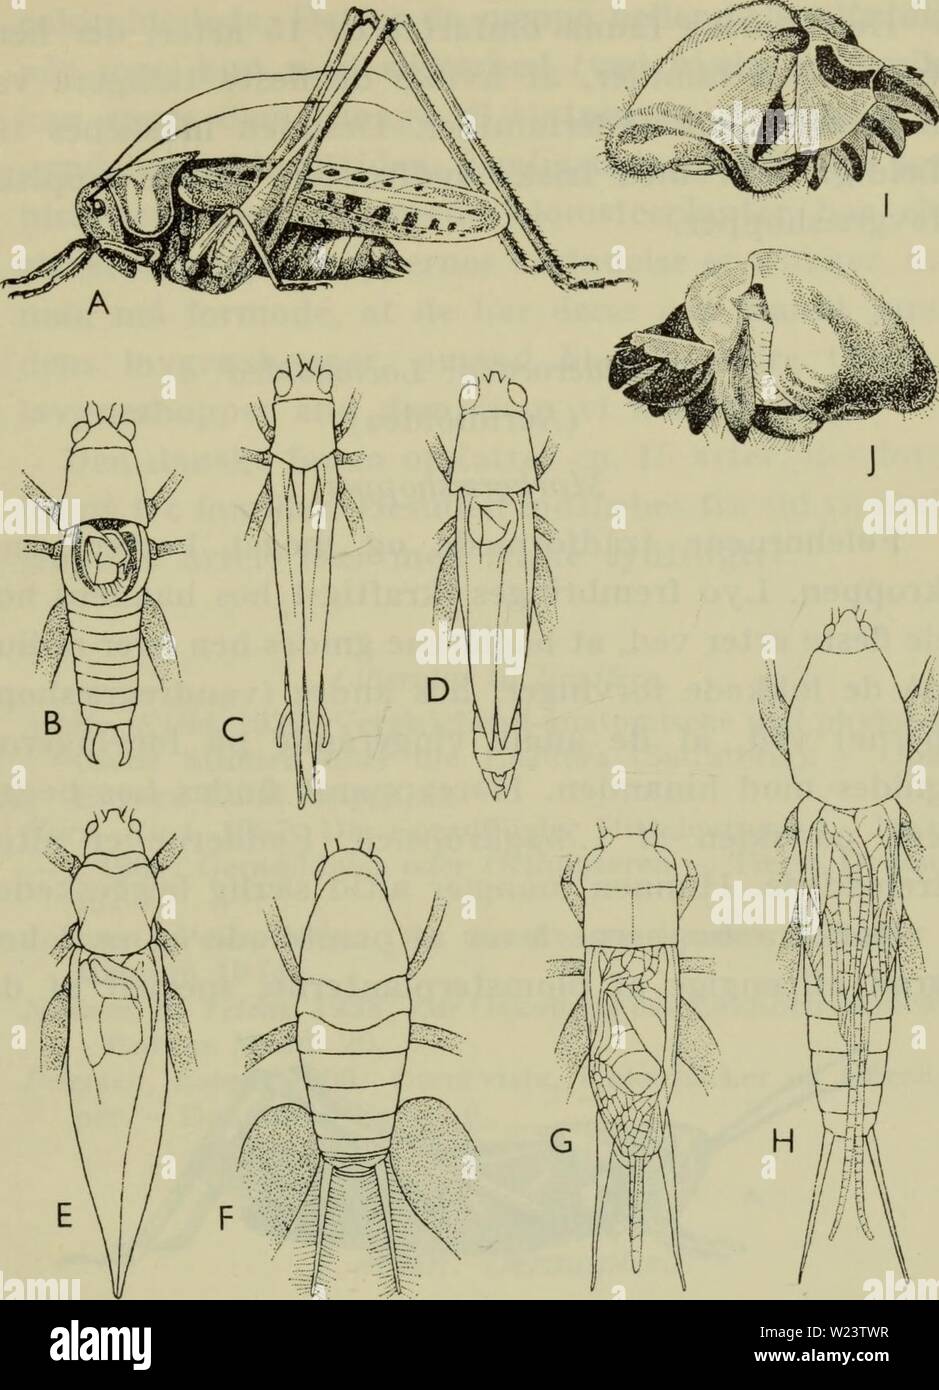 Archive image from page 184 of Danmarks fauna; illustrerede haandbøger over. Danmarks fauna; illustrerede haandbøger over den danske dyreverden..  danmarksfaunaill71dans Year: 1907  181    Fig. 59. Løvgræshopper ((&lt;?). A Decticus verrucivorus; B Lepto- phyes puiictatissima; C Meconema varium; D Xiphidium dorsale; E Locusta cantans; F Tachycines asynamorus; G Grylliis domesti- cus; H Gryllotalpa vulgaris. I og J højre forben af Gryllotalpa set fra indersiden og fra ydersiden. tiden (perm) og har stor lighed med kultidens Prot- orthoptera, fra hvilke de sandsynligvis skal afledes. Stock Photo